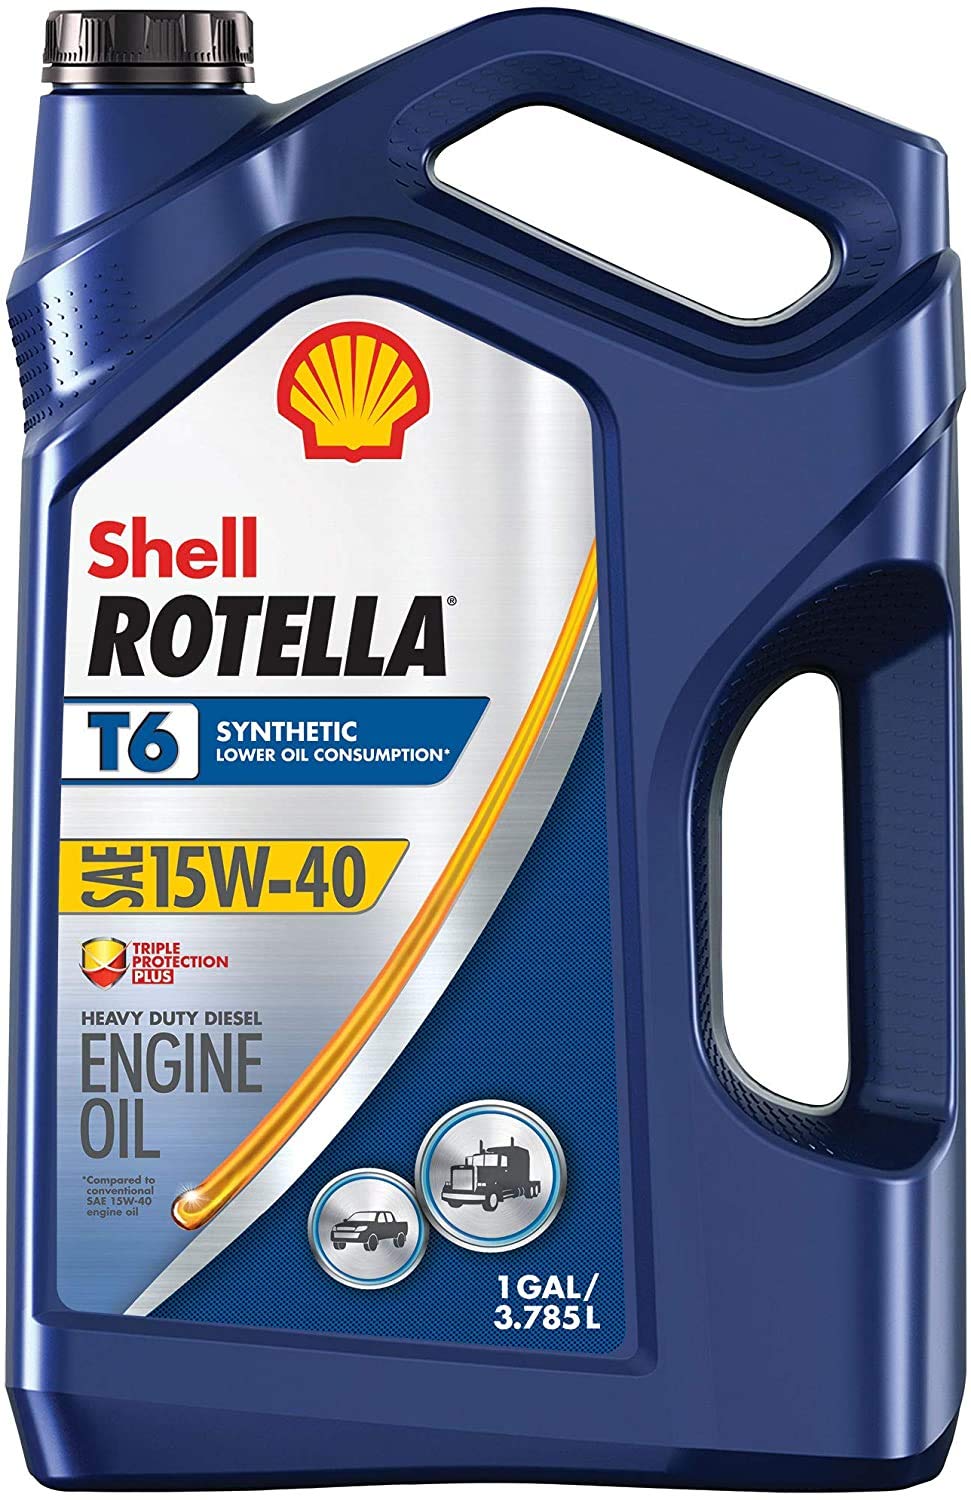 Shell Rotella W pełni syntetyczny olej do silników Diesla T6